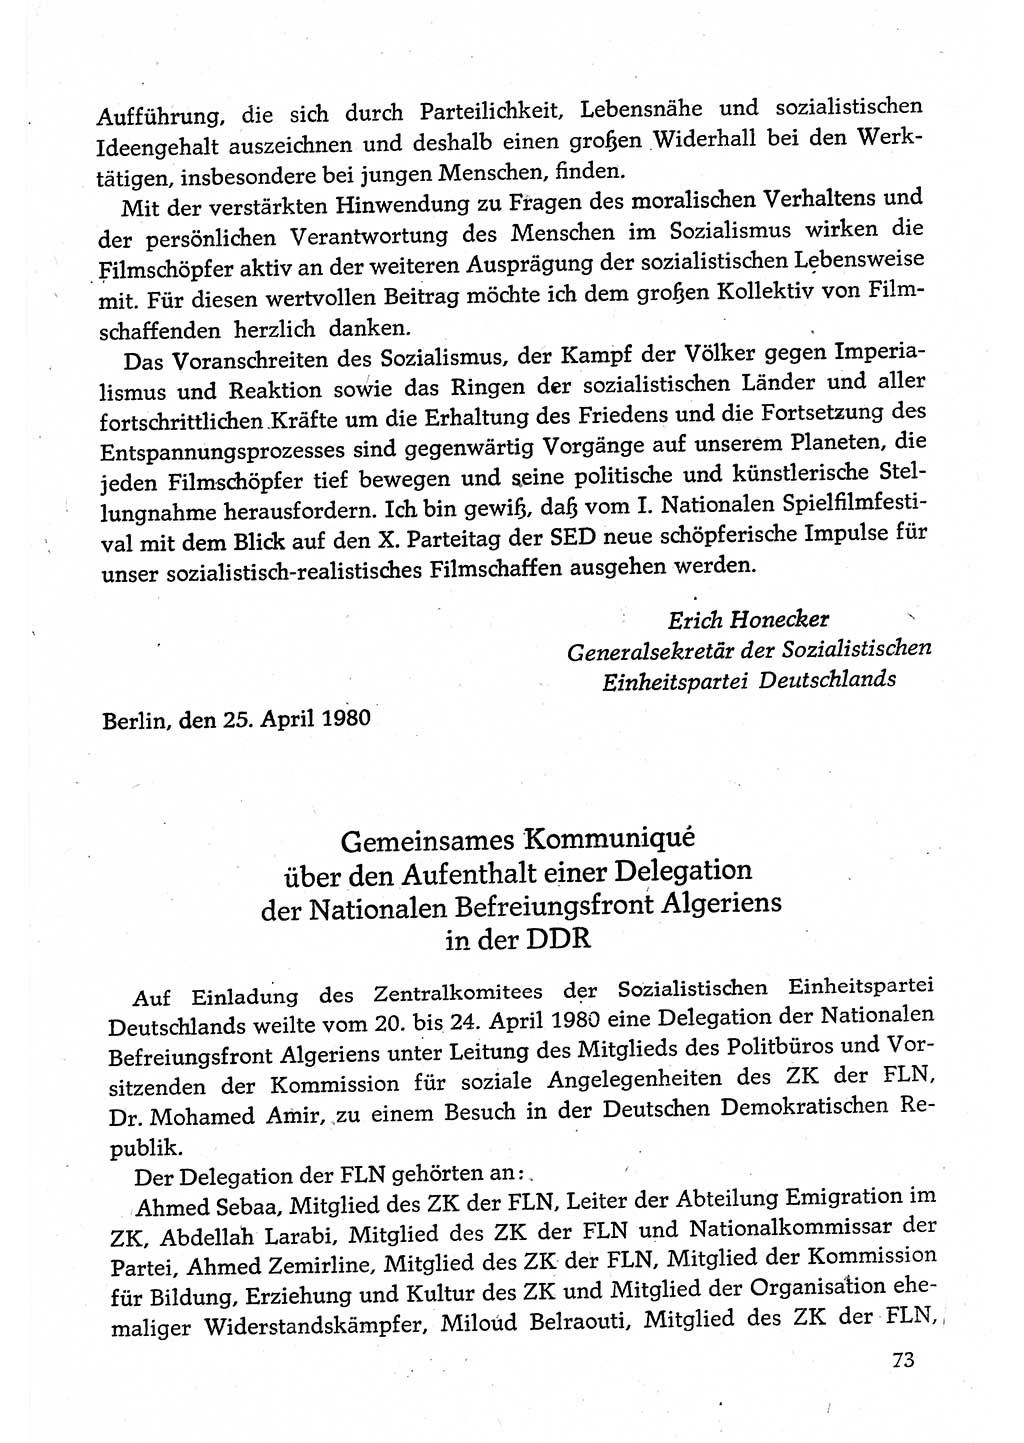 Dokumente der Sozialistischen Einheitspartei Deutschlands (SED) [Deutsche Demokratische Republik (DDR)] 1980-1981, Seite 73 (Dok. SED DDR 1980-1981, S. 73)